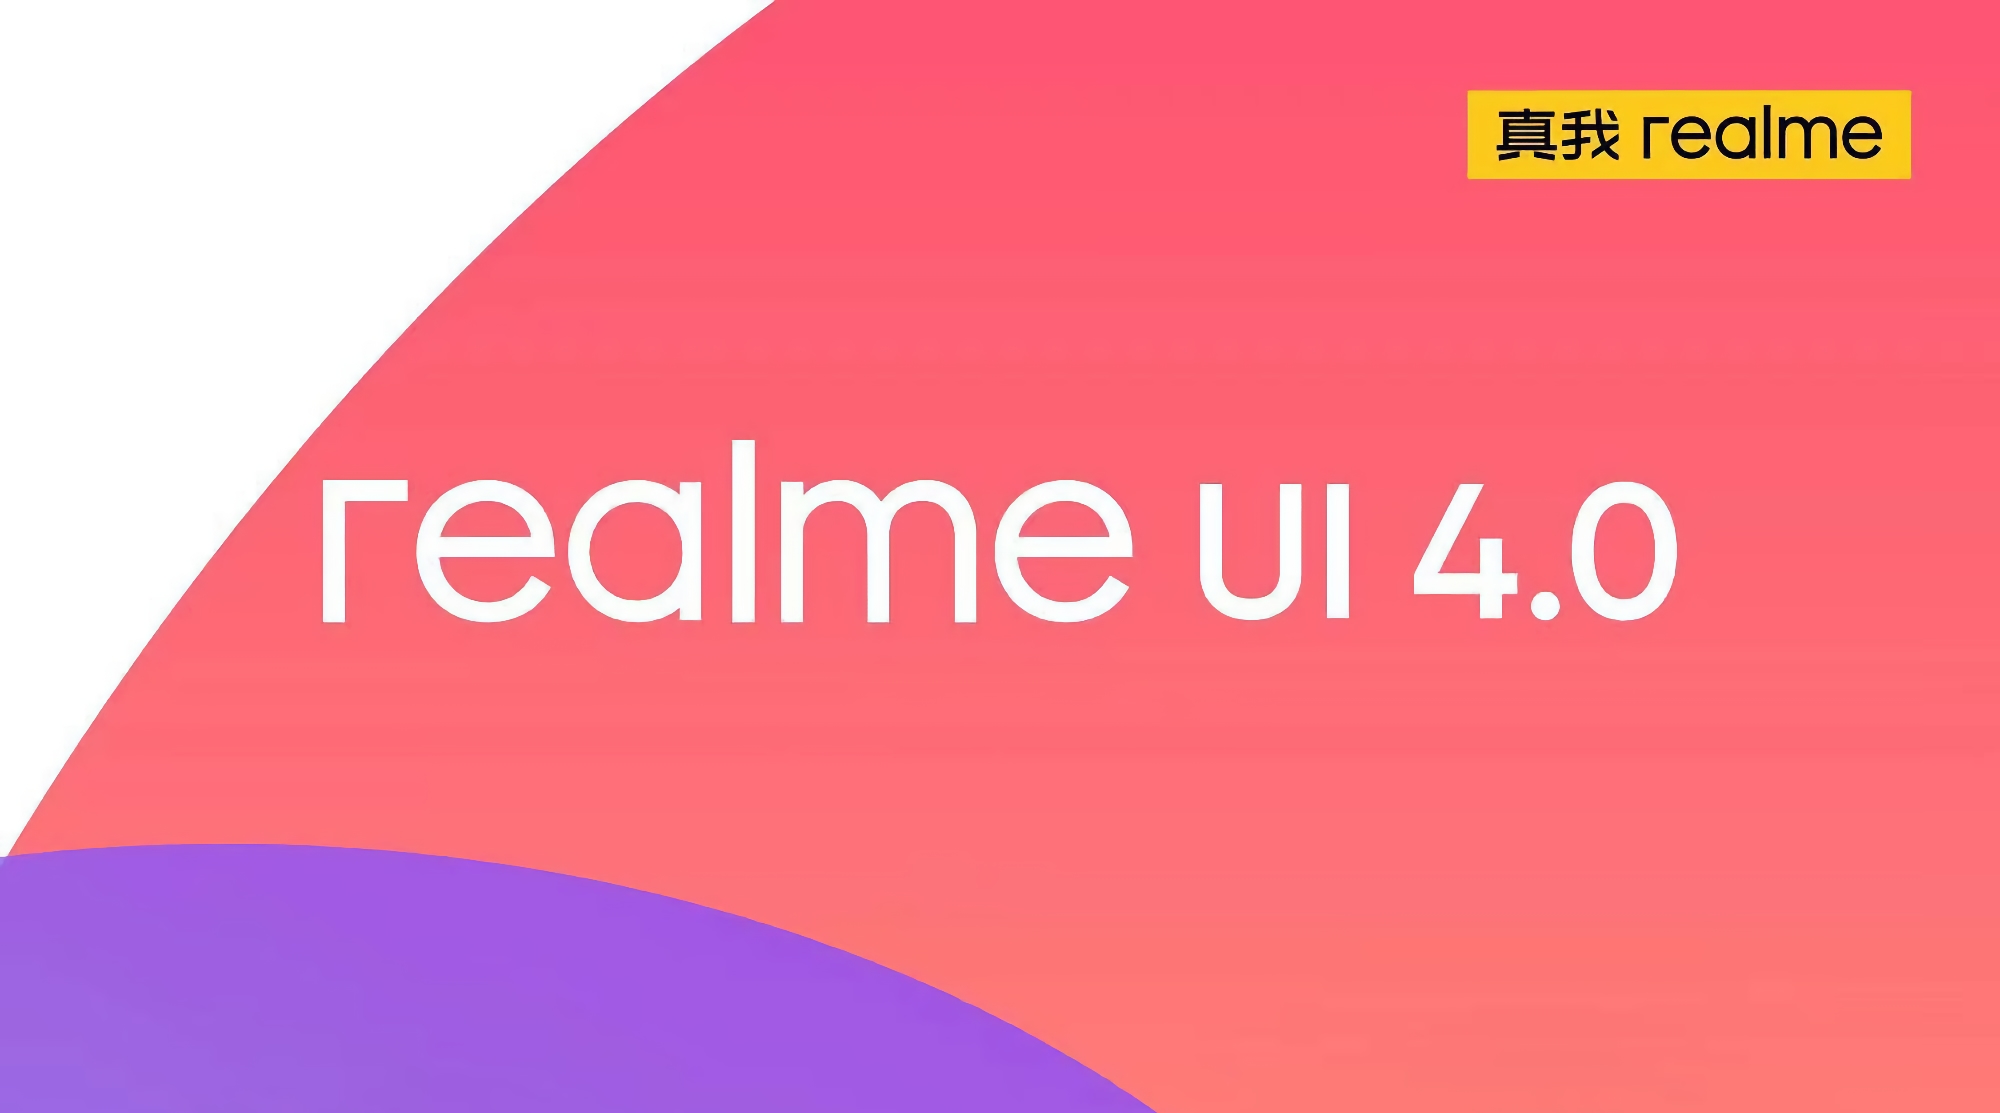 Realme powiedział, kiedy wprowadzi powłokę realme UI 4.0 i które smartfony otrzymają ją jako pierwsze